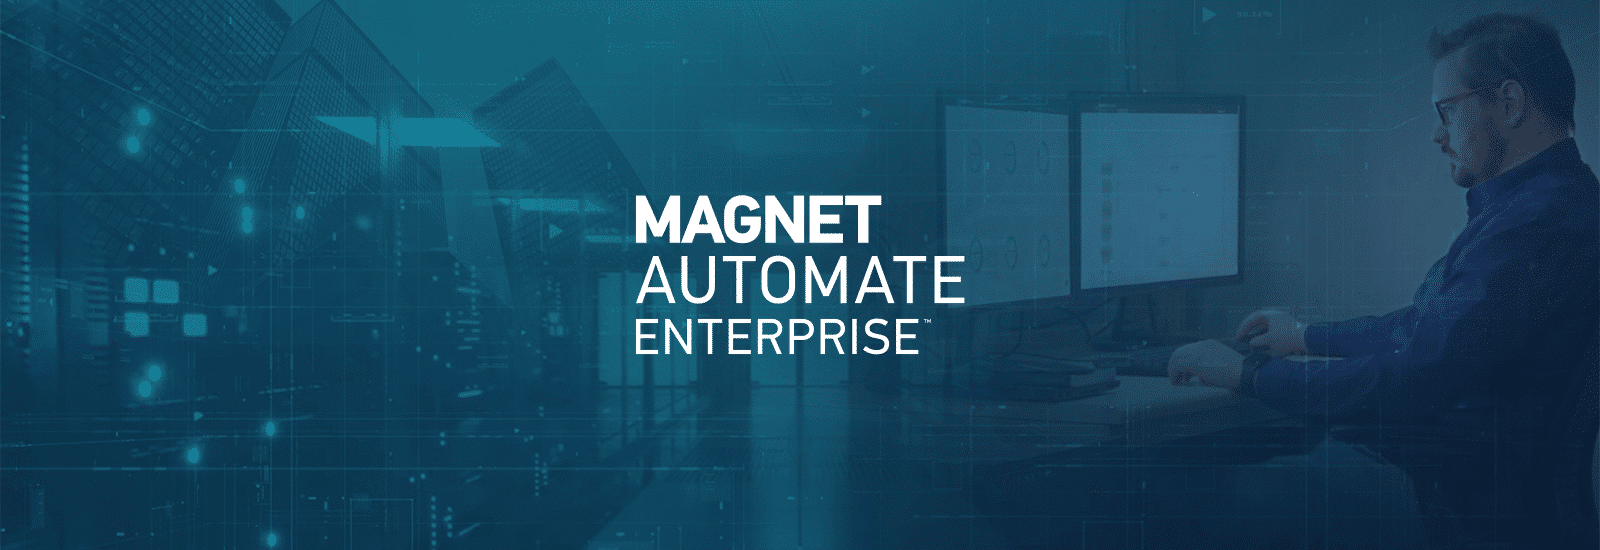 Magnet AUTOMATE Enterprise Blog